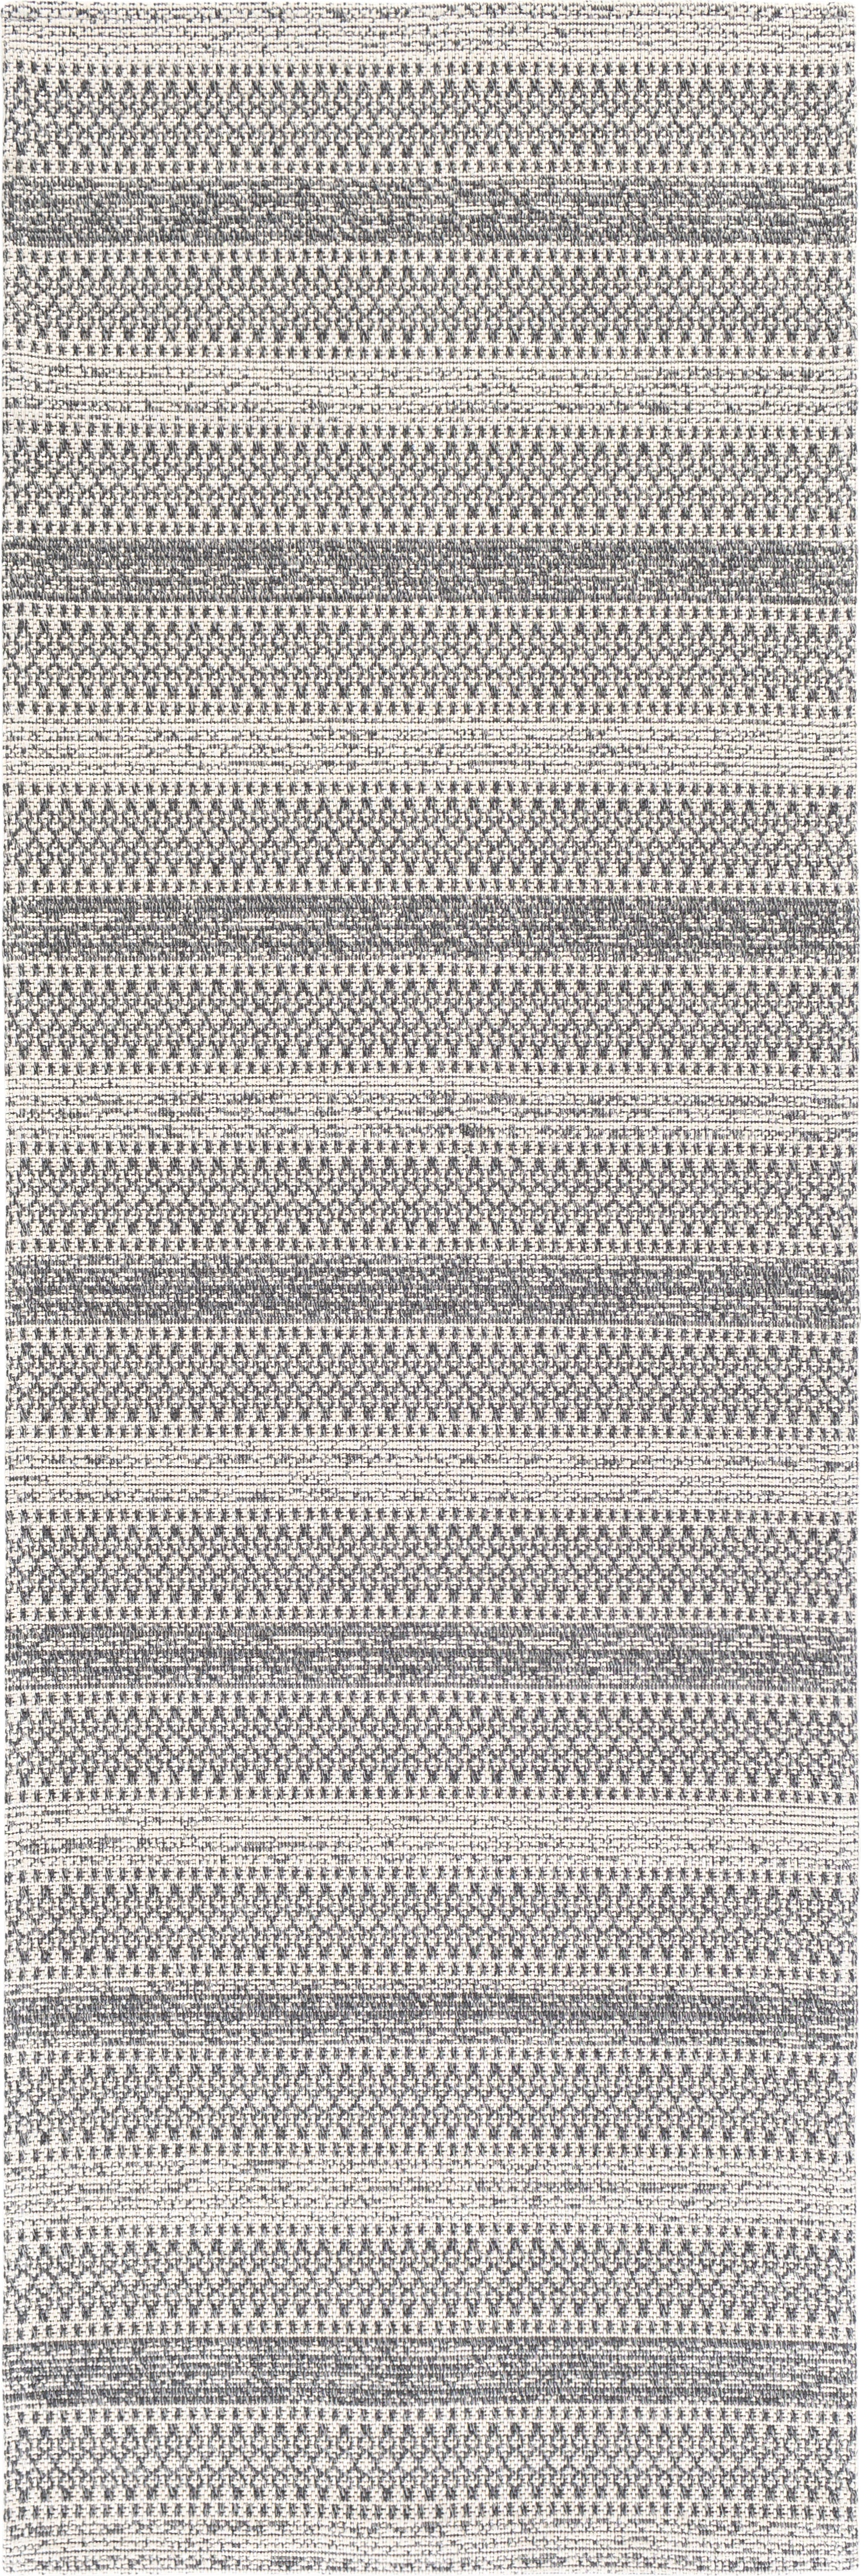 Black & White Cotton Door mat Rug Indoor Outdoor - 2x3' Zig Zag